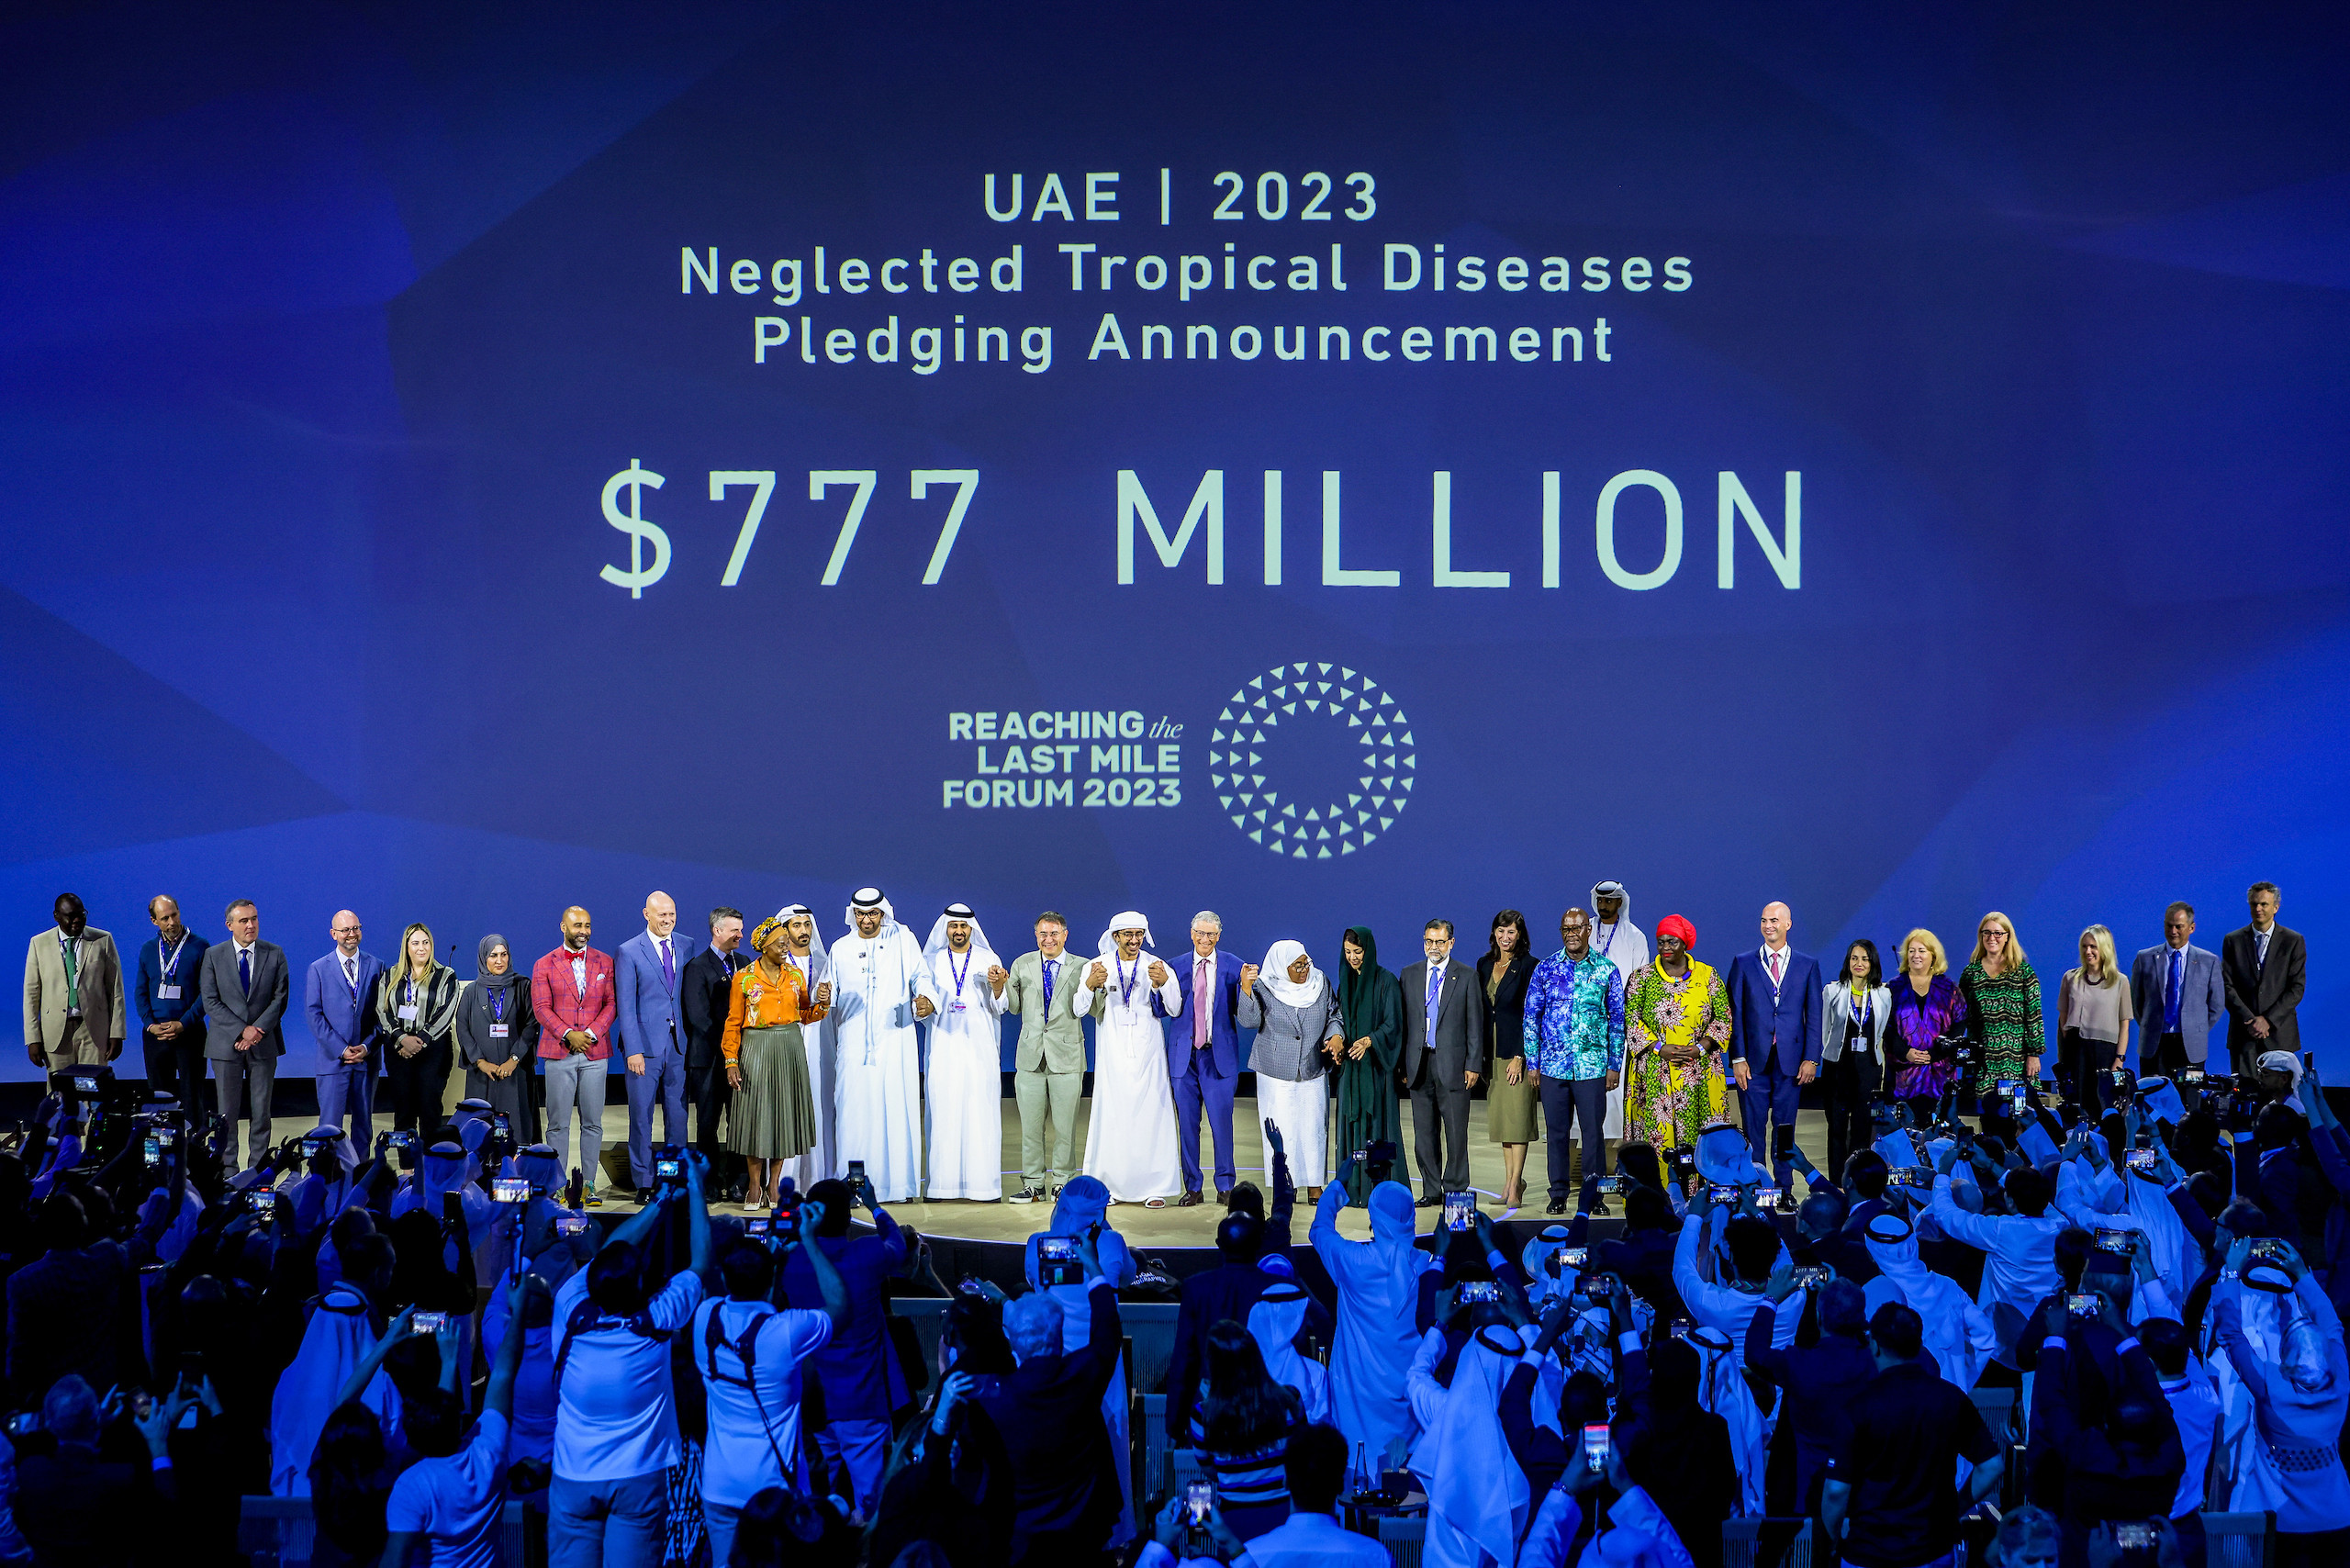 Na última cúpula climática da ONU, os Emirados Árabes Unidos e instituições filantrópicas prometeram contribuir com US$ 777 milhões para a erradicação de doenças tropicais